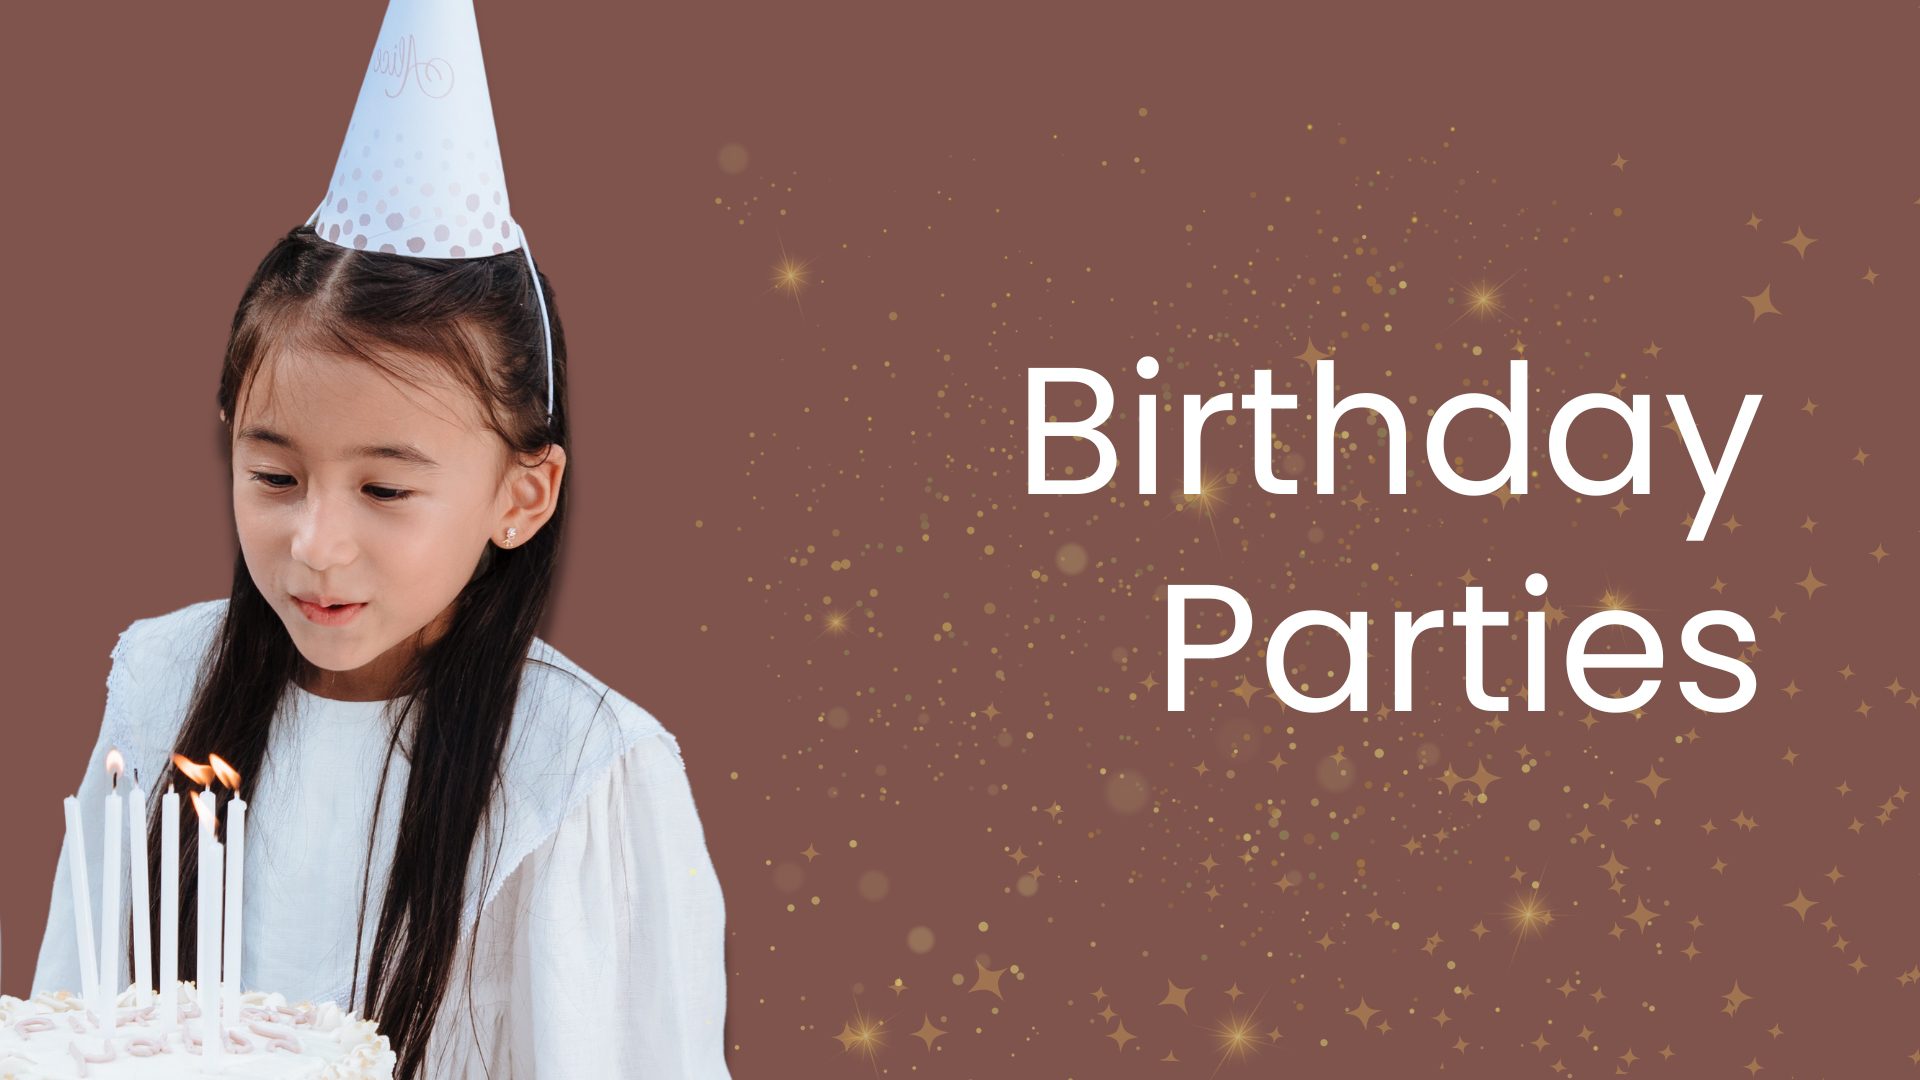 Family days | Birthday Parties in Mumbai